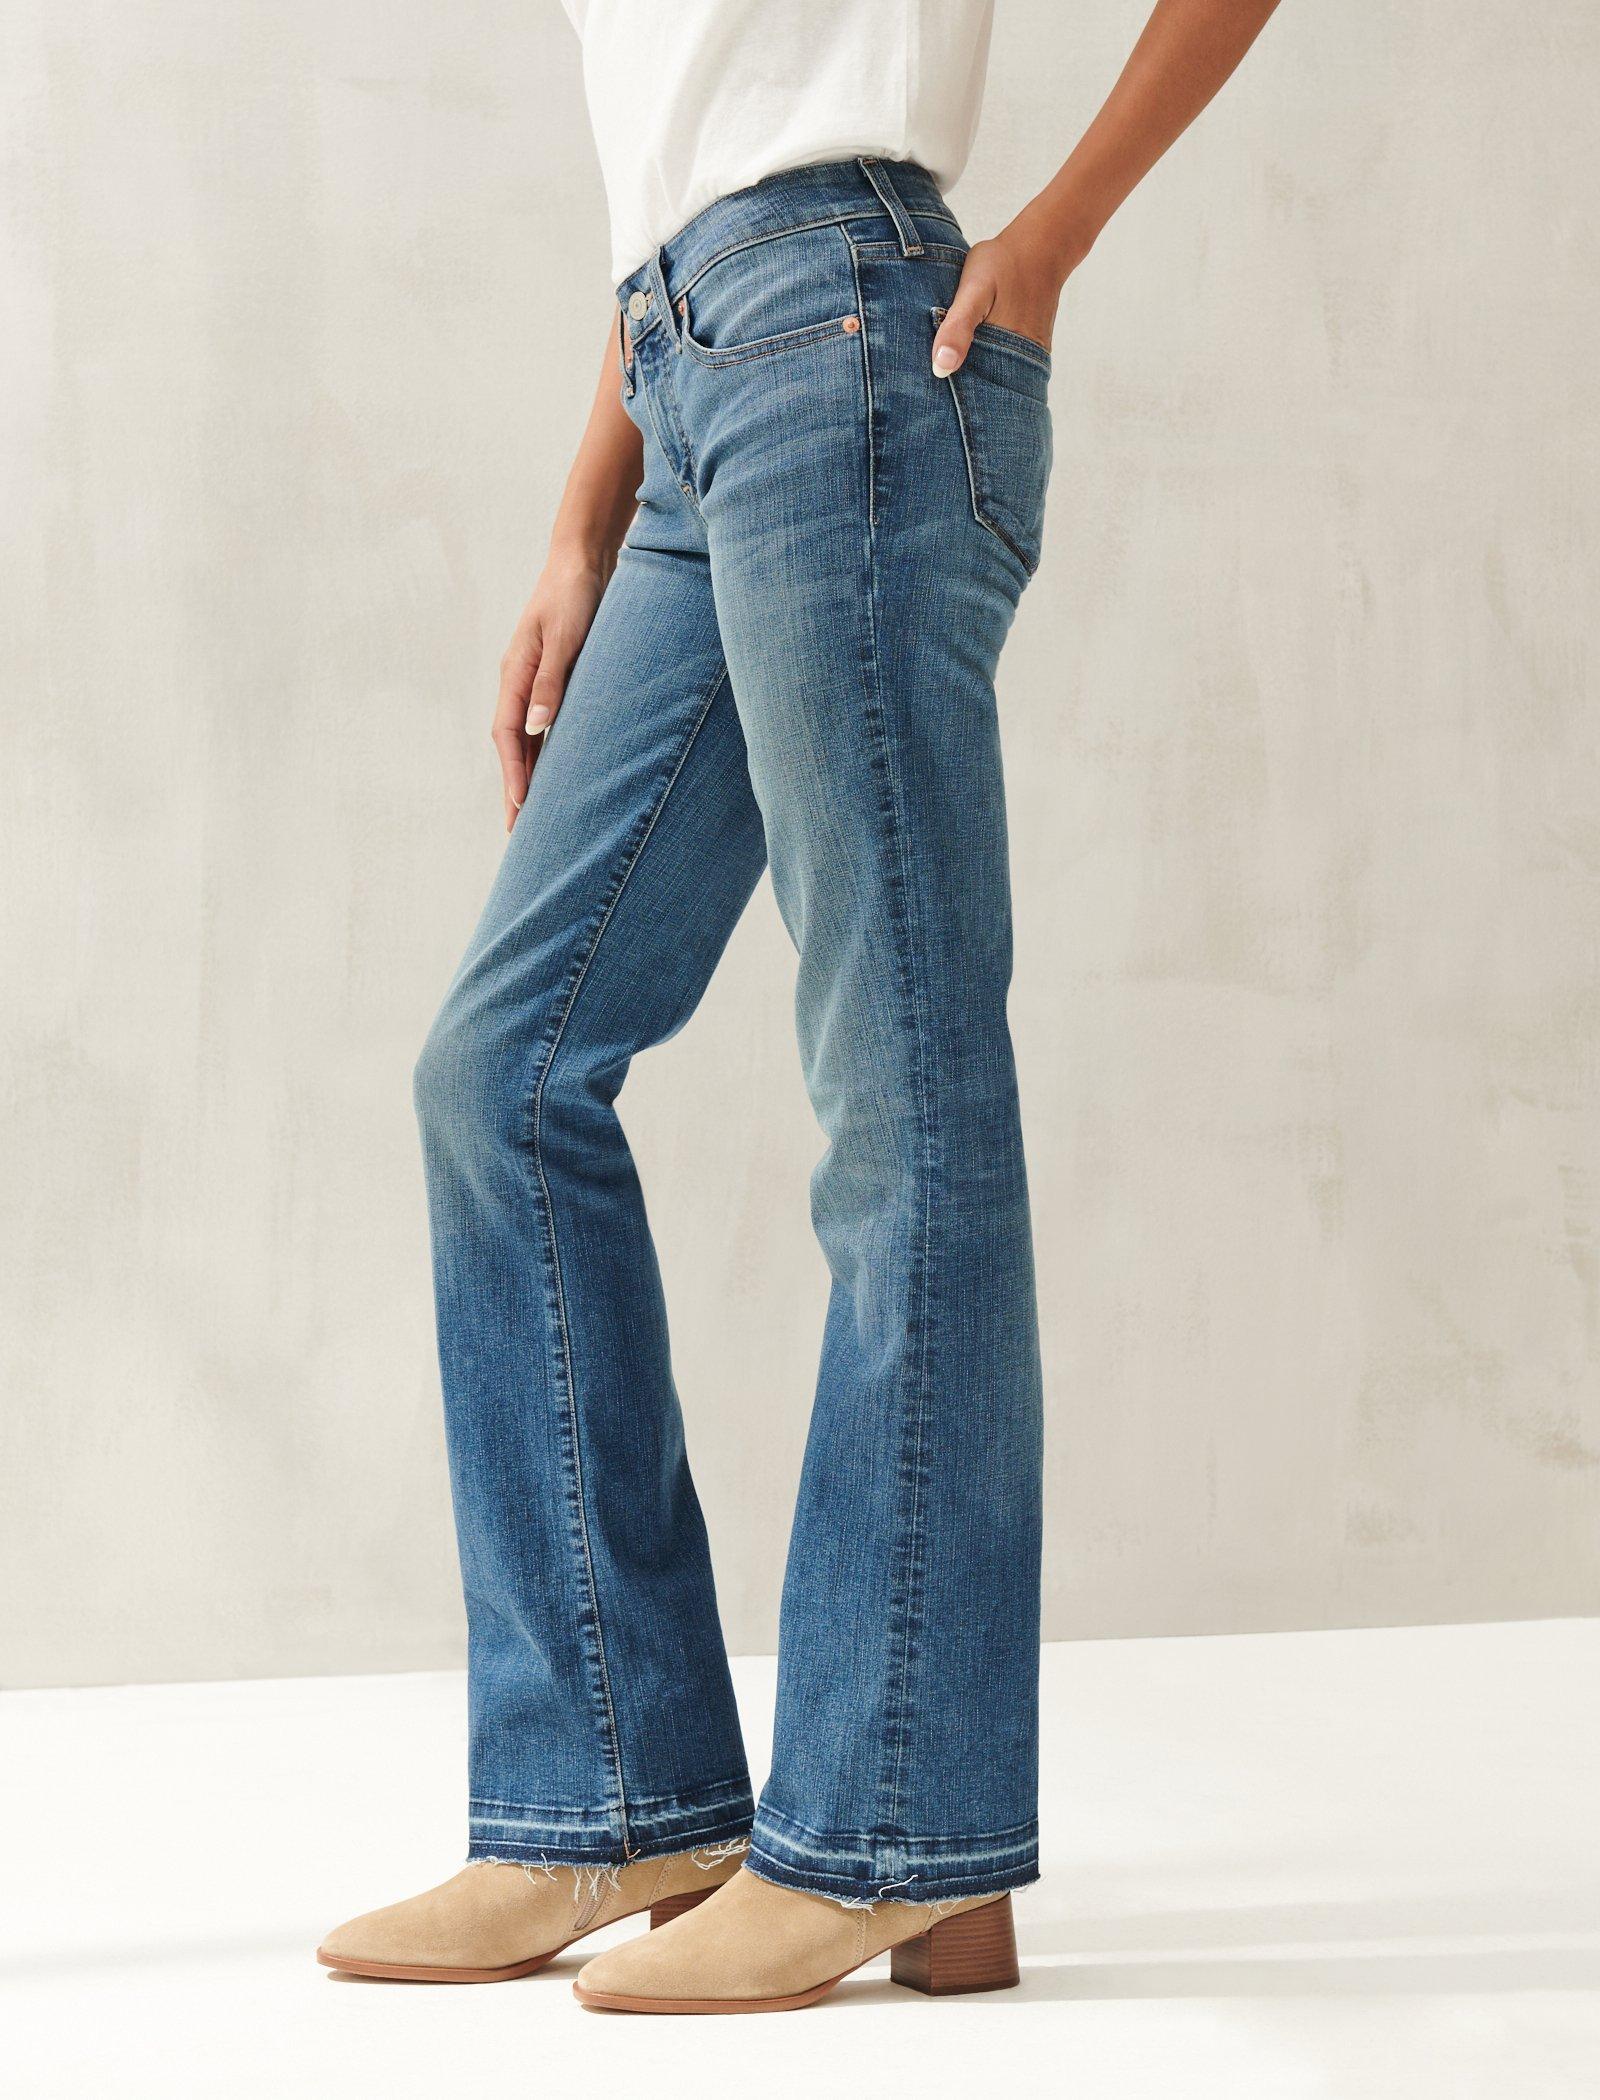 lucky brand women's boot cut jeans